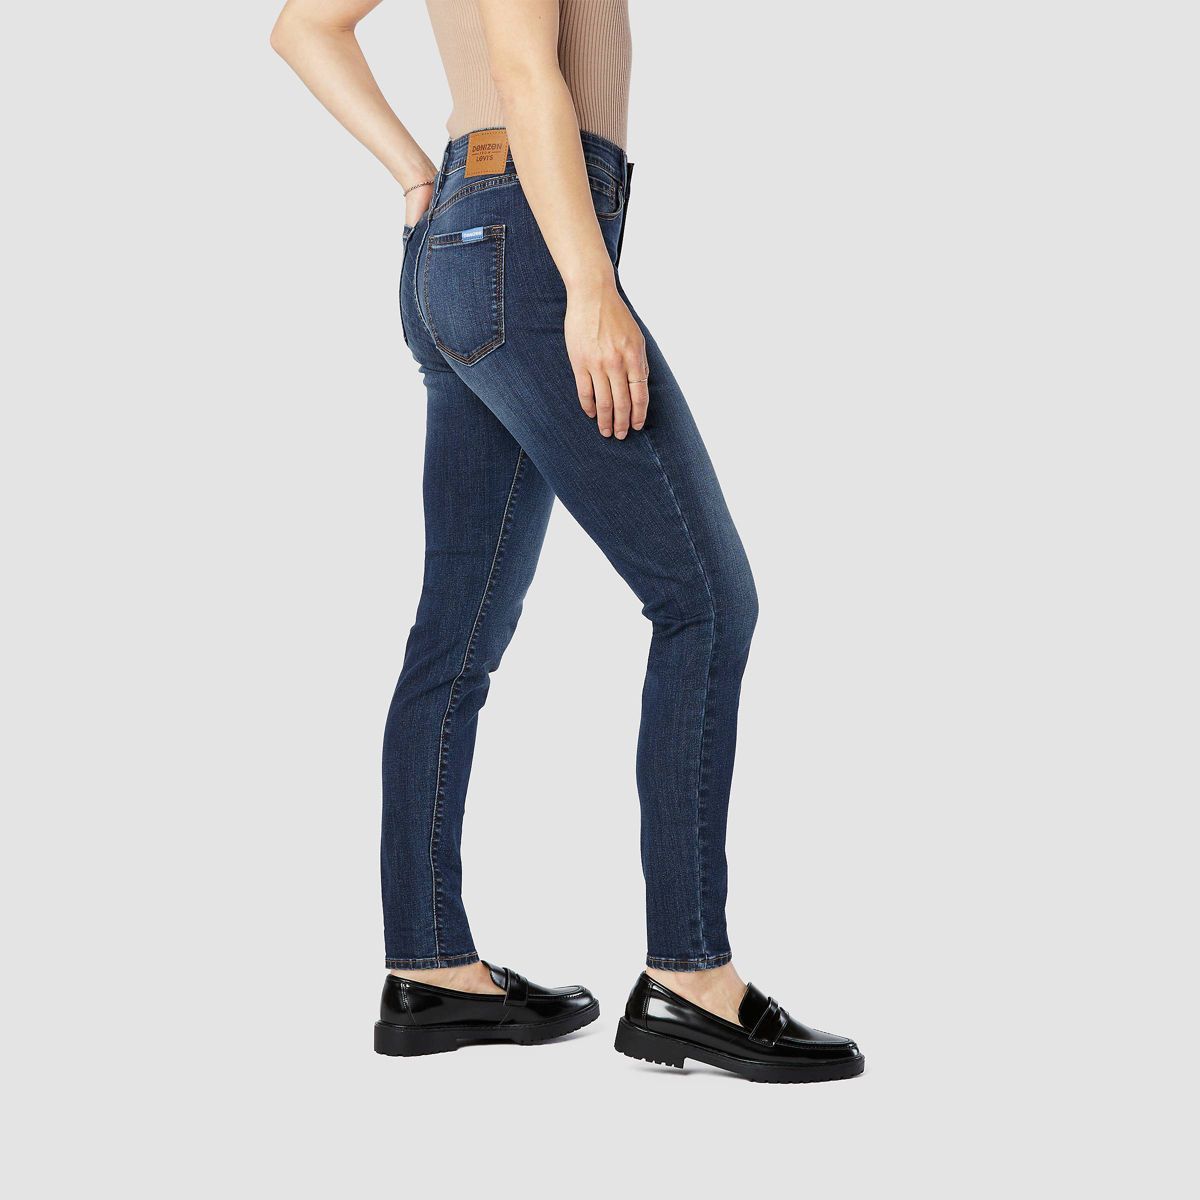 DENIZEN® from Levi's® Women's High-Rise Skinny Jeans | Target